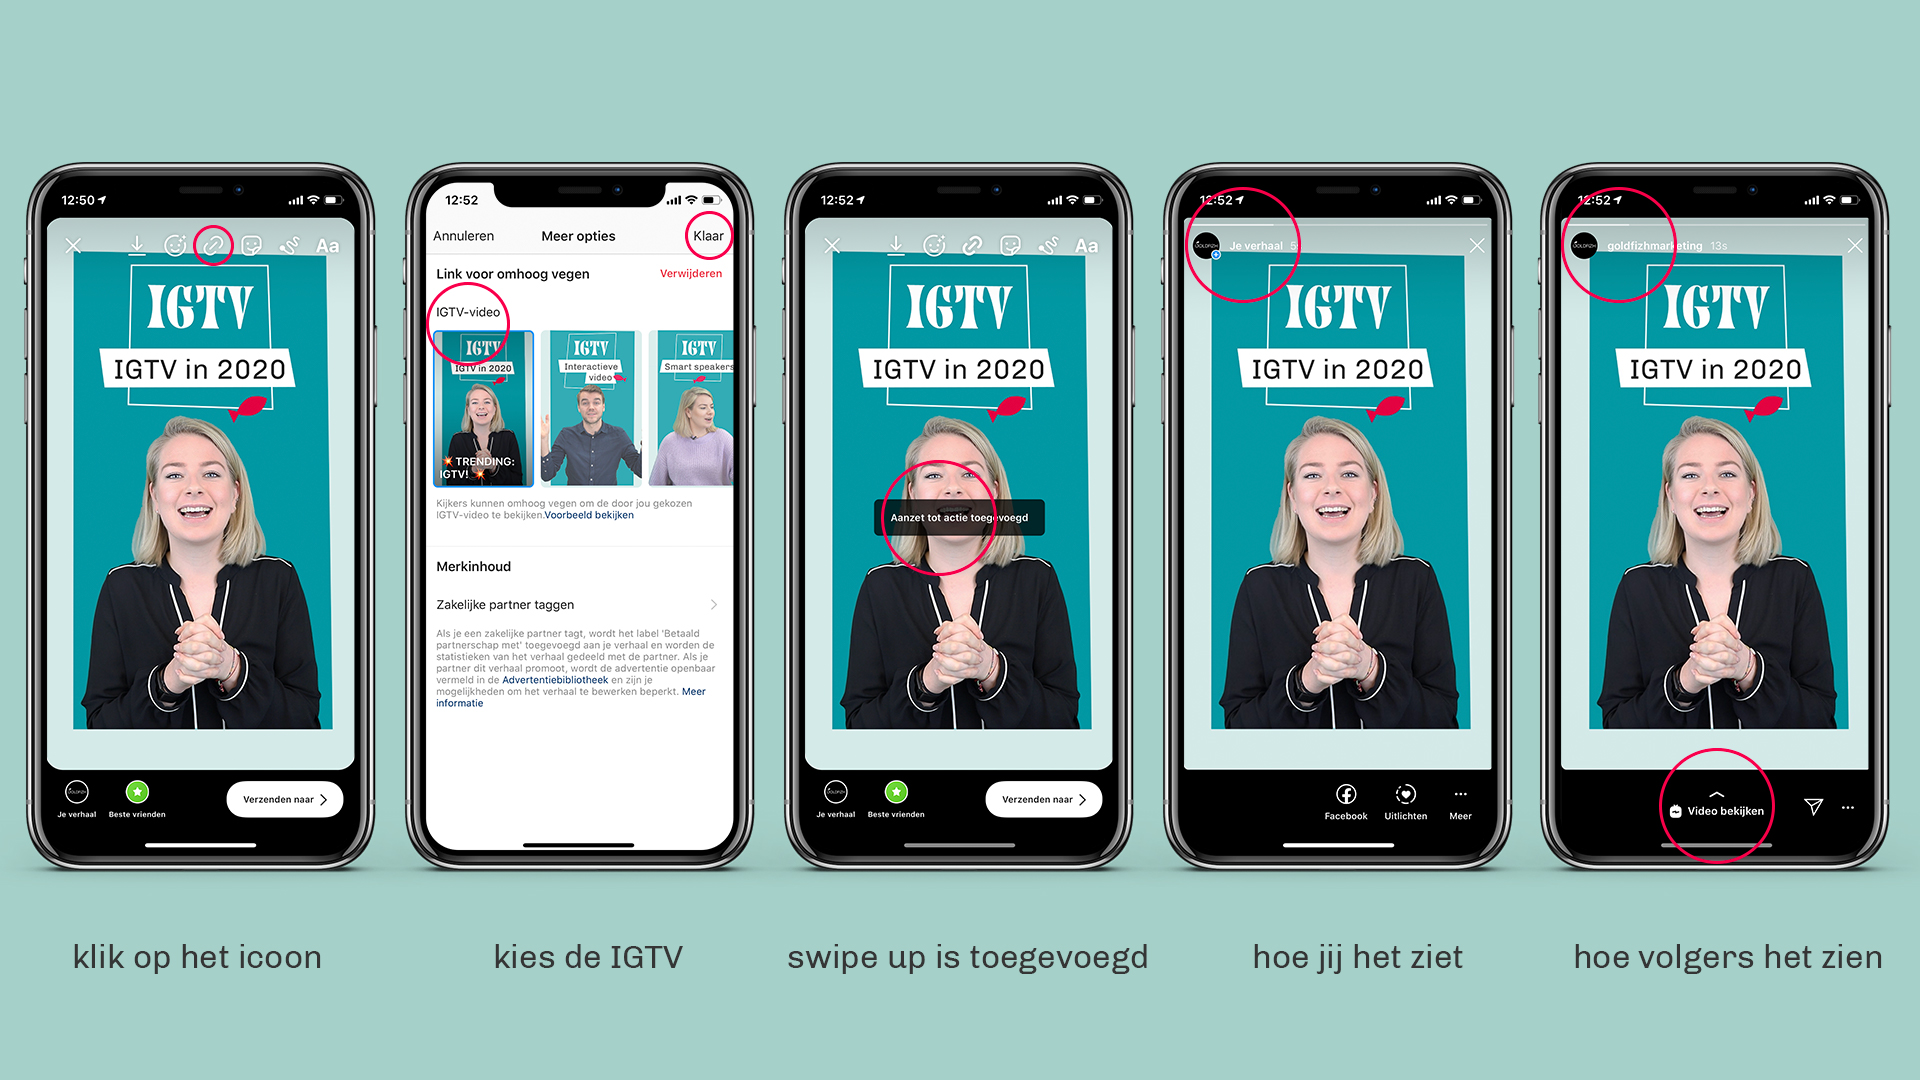 IGTV delen via swipe up